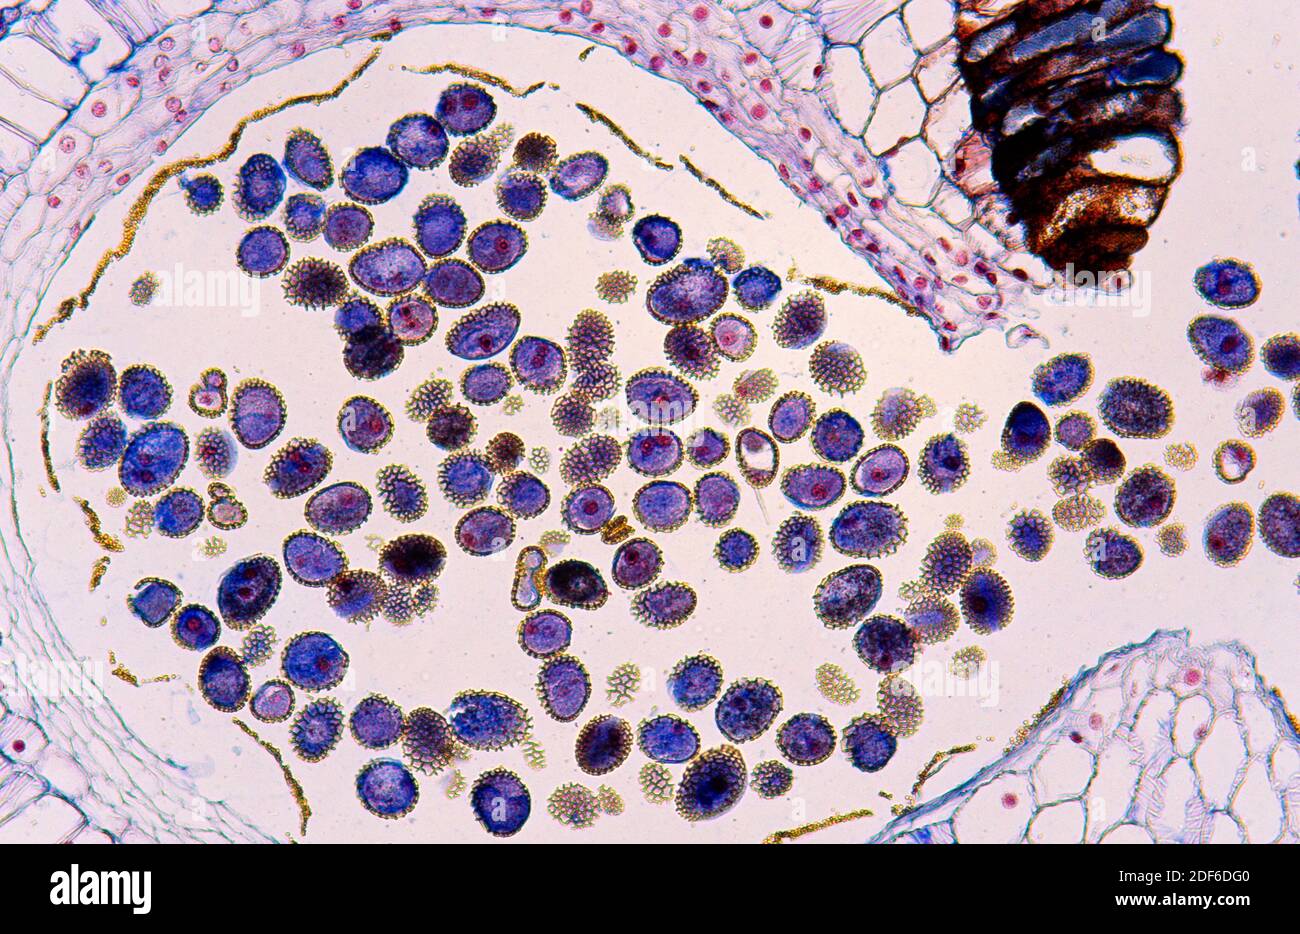 Anthère de lys avec pollen. Microscope optique, grossissement X100. Banque D'Images